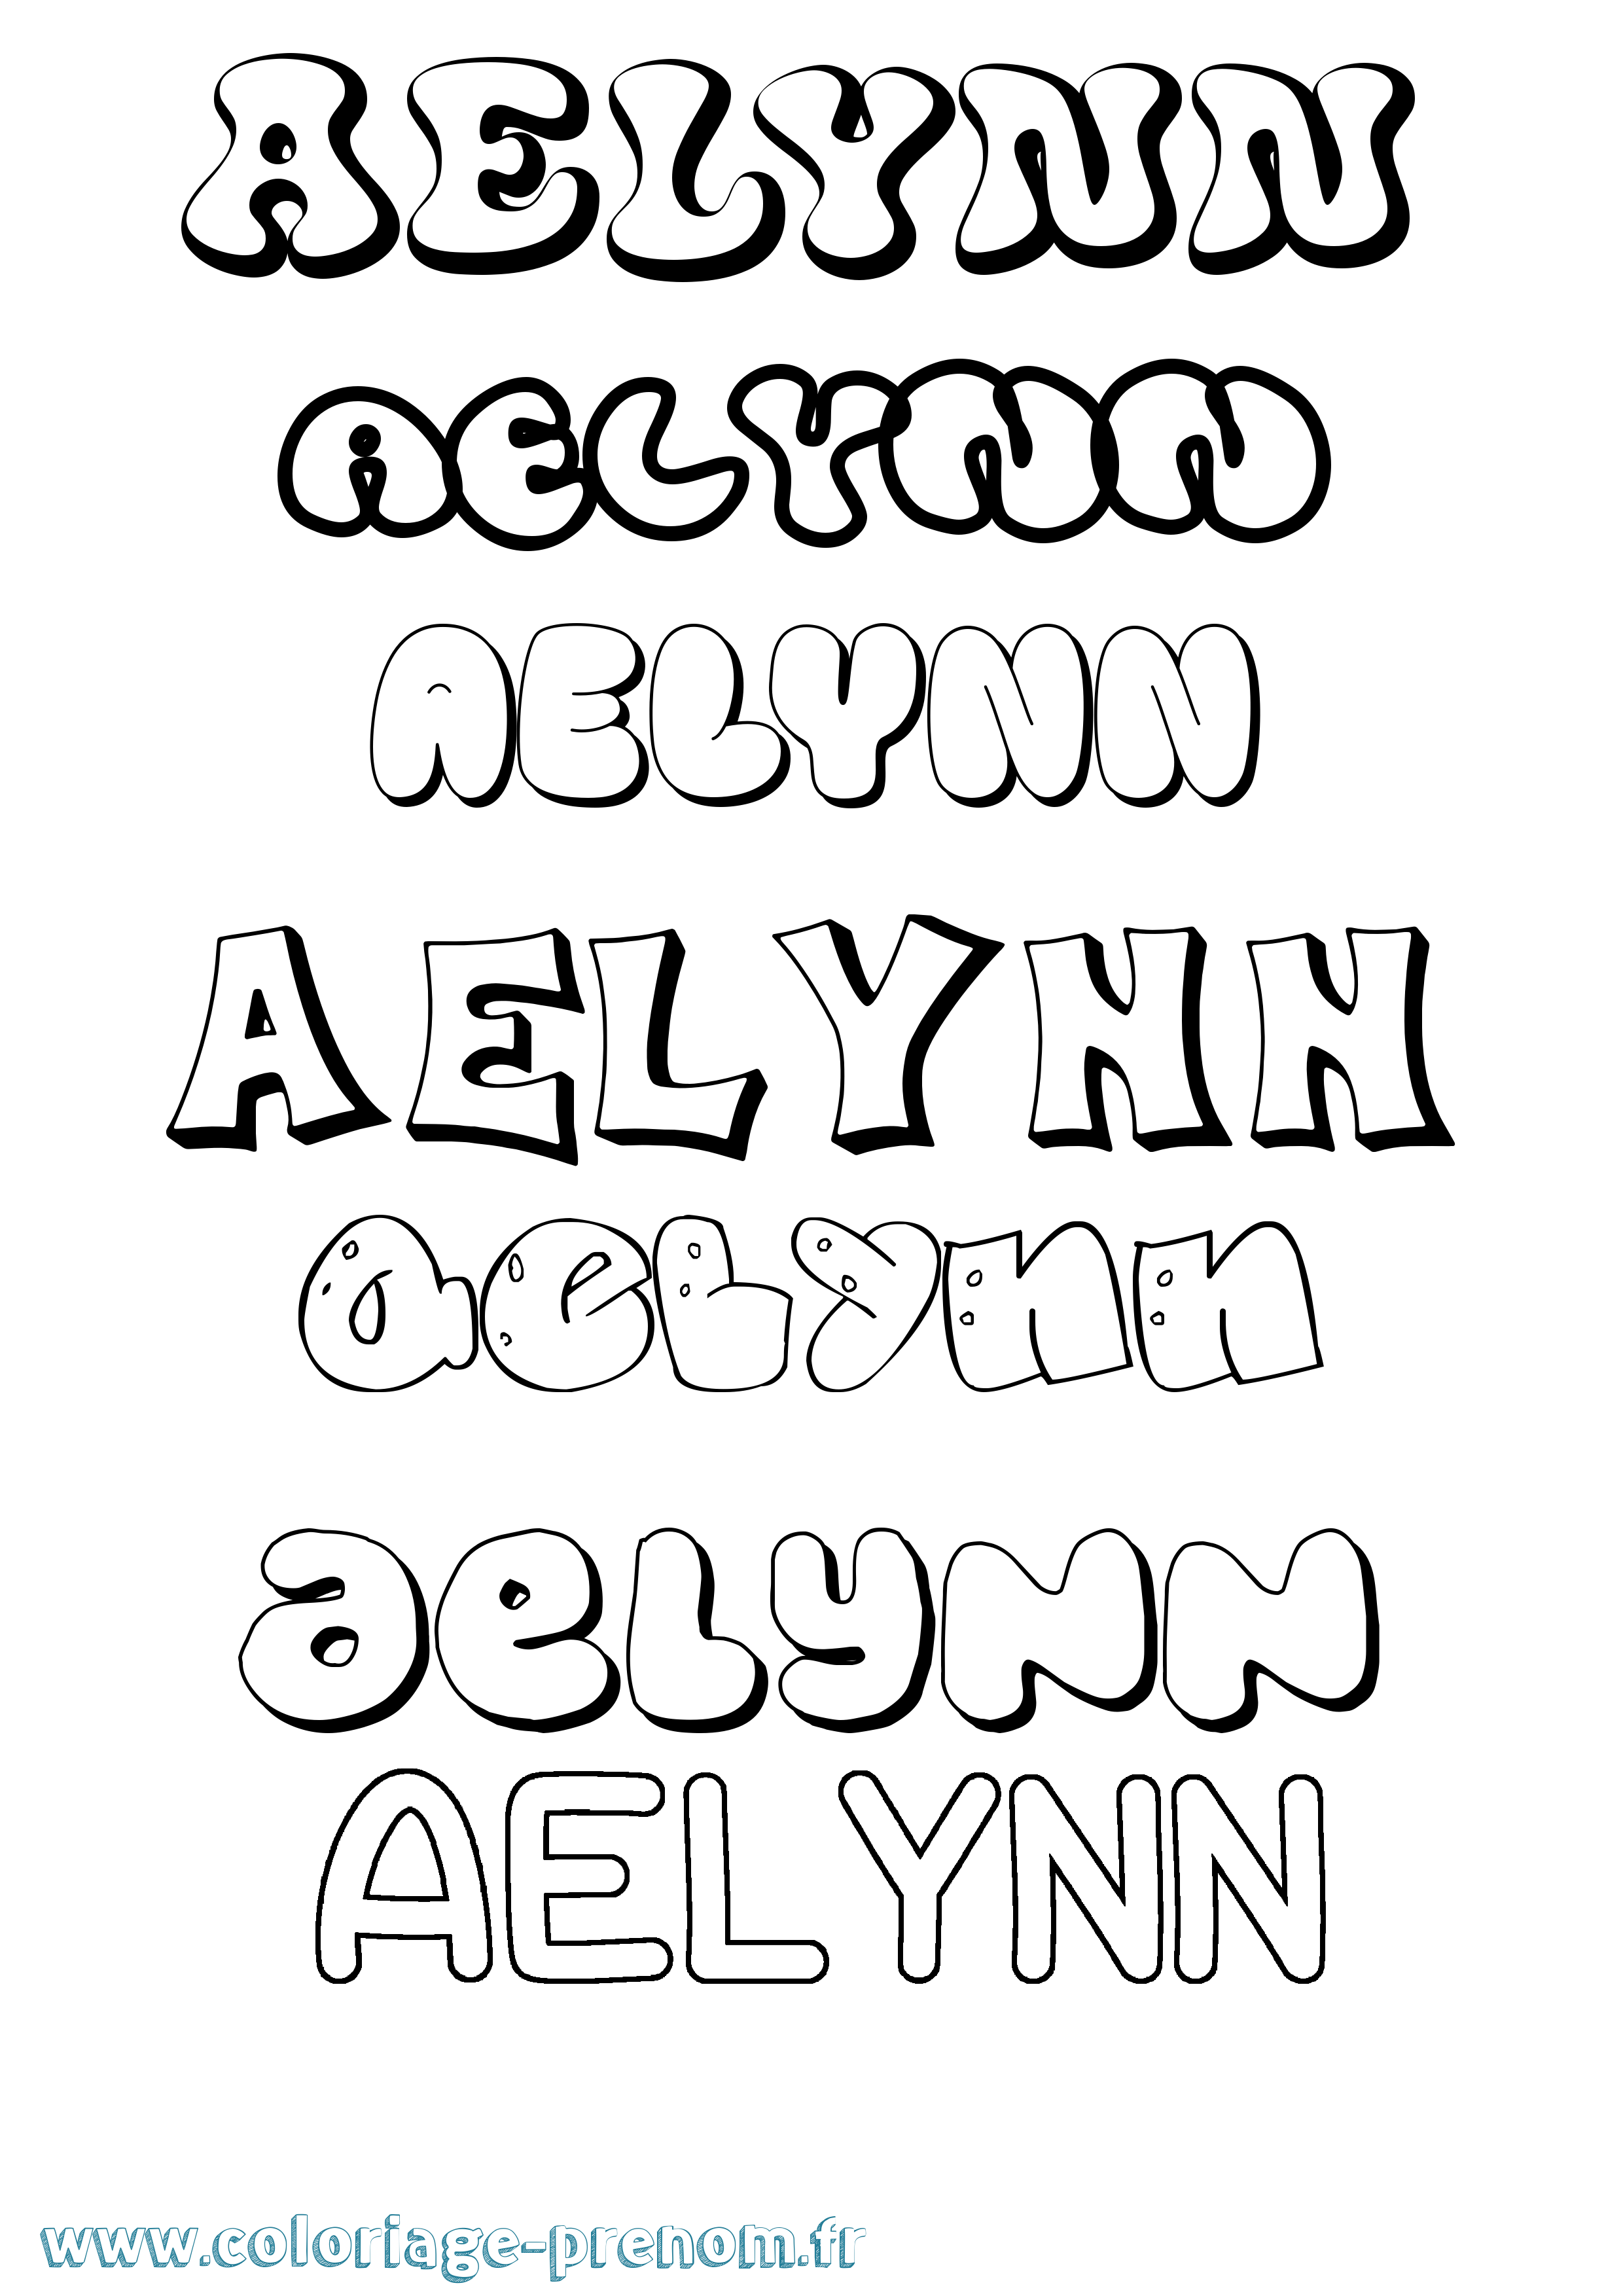 Coloriage prénom Aelynn Bubble